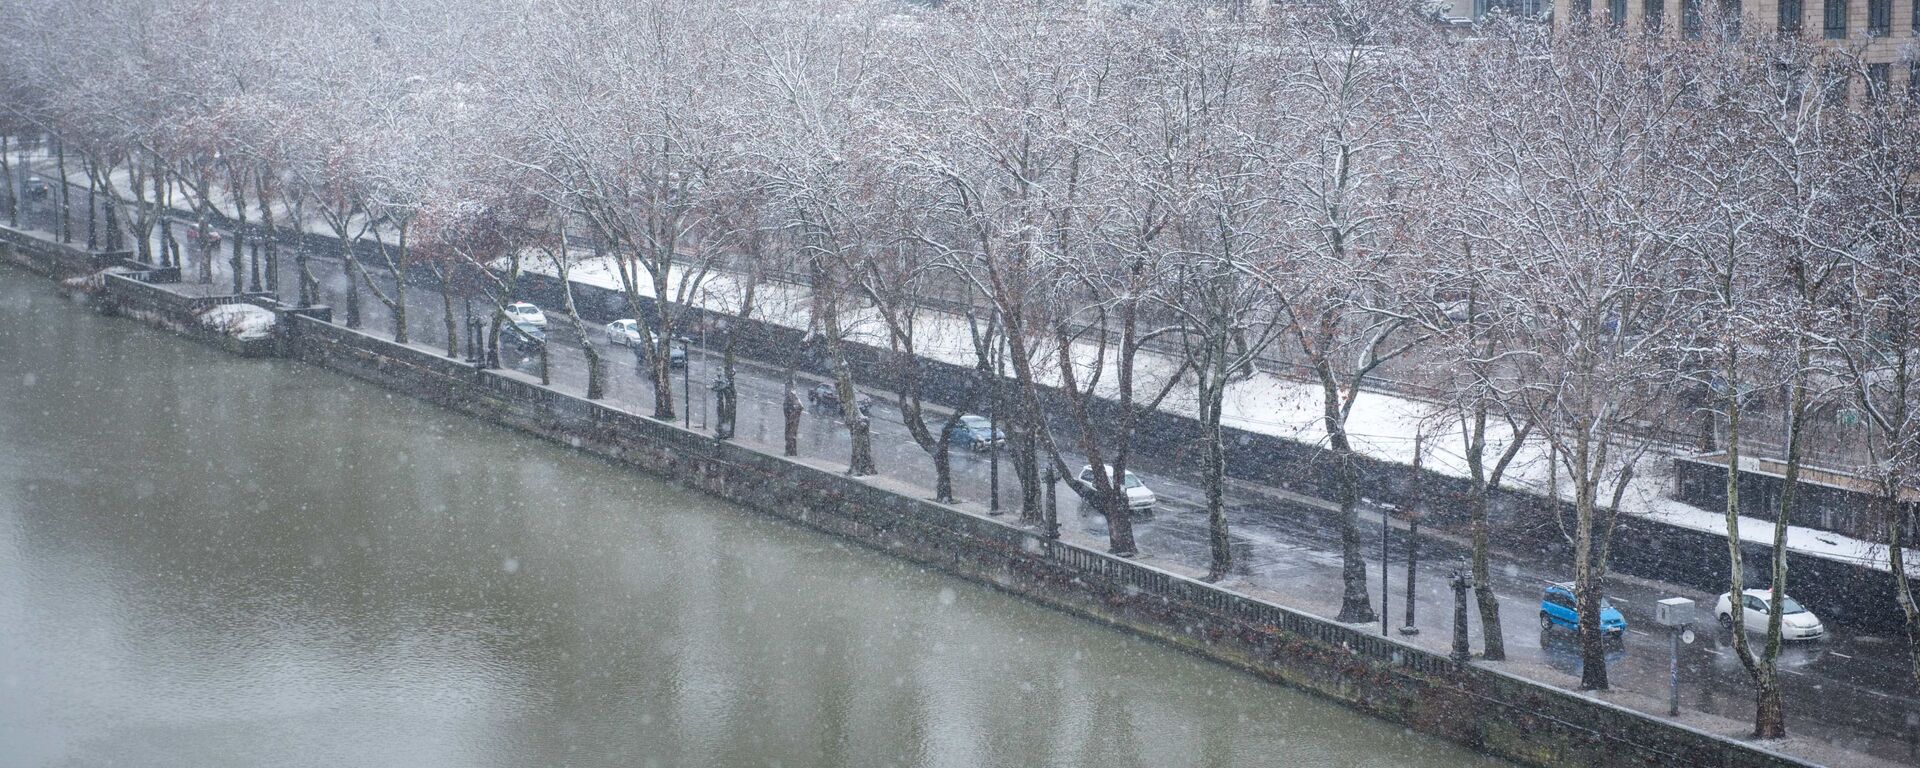 Погода в Тбилиси - машины едут по набережной в снег - Sputnik Грузия, 1920, 11.03.2021